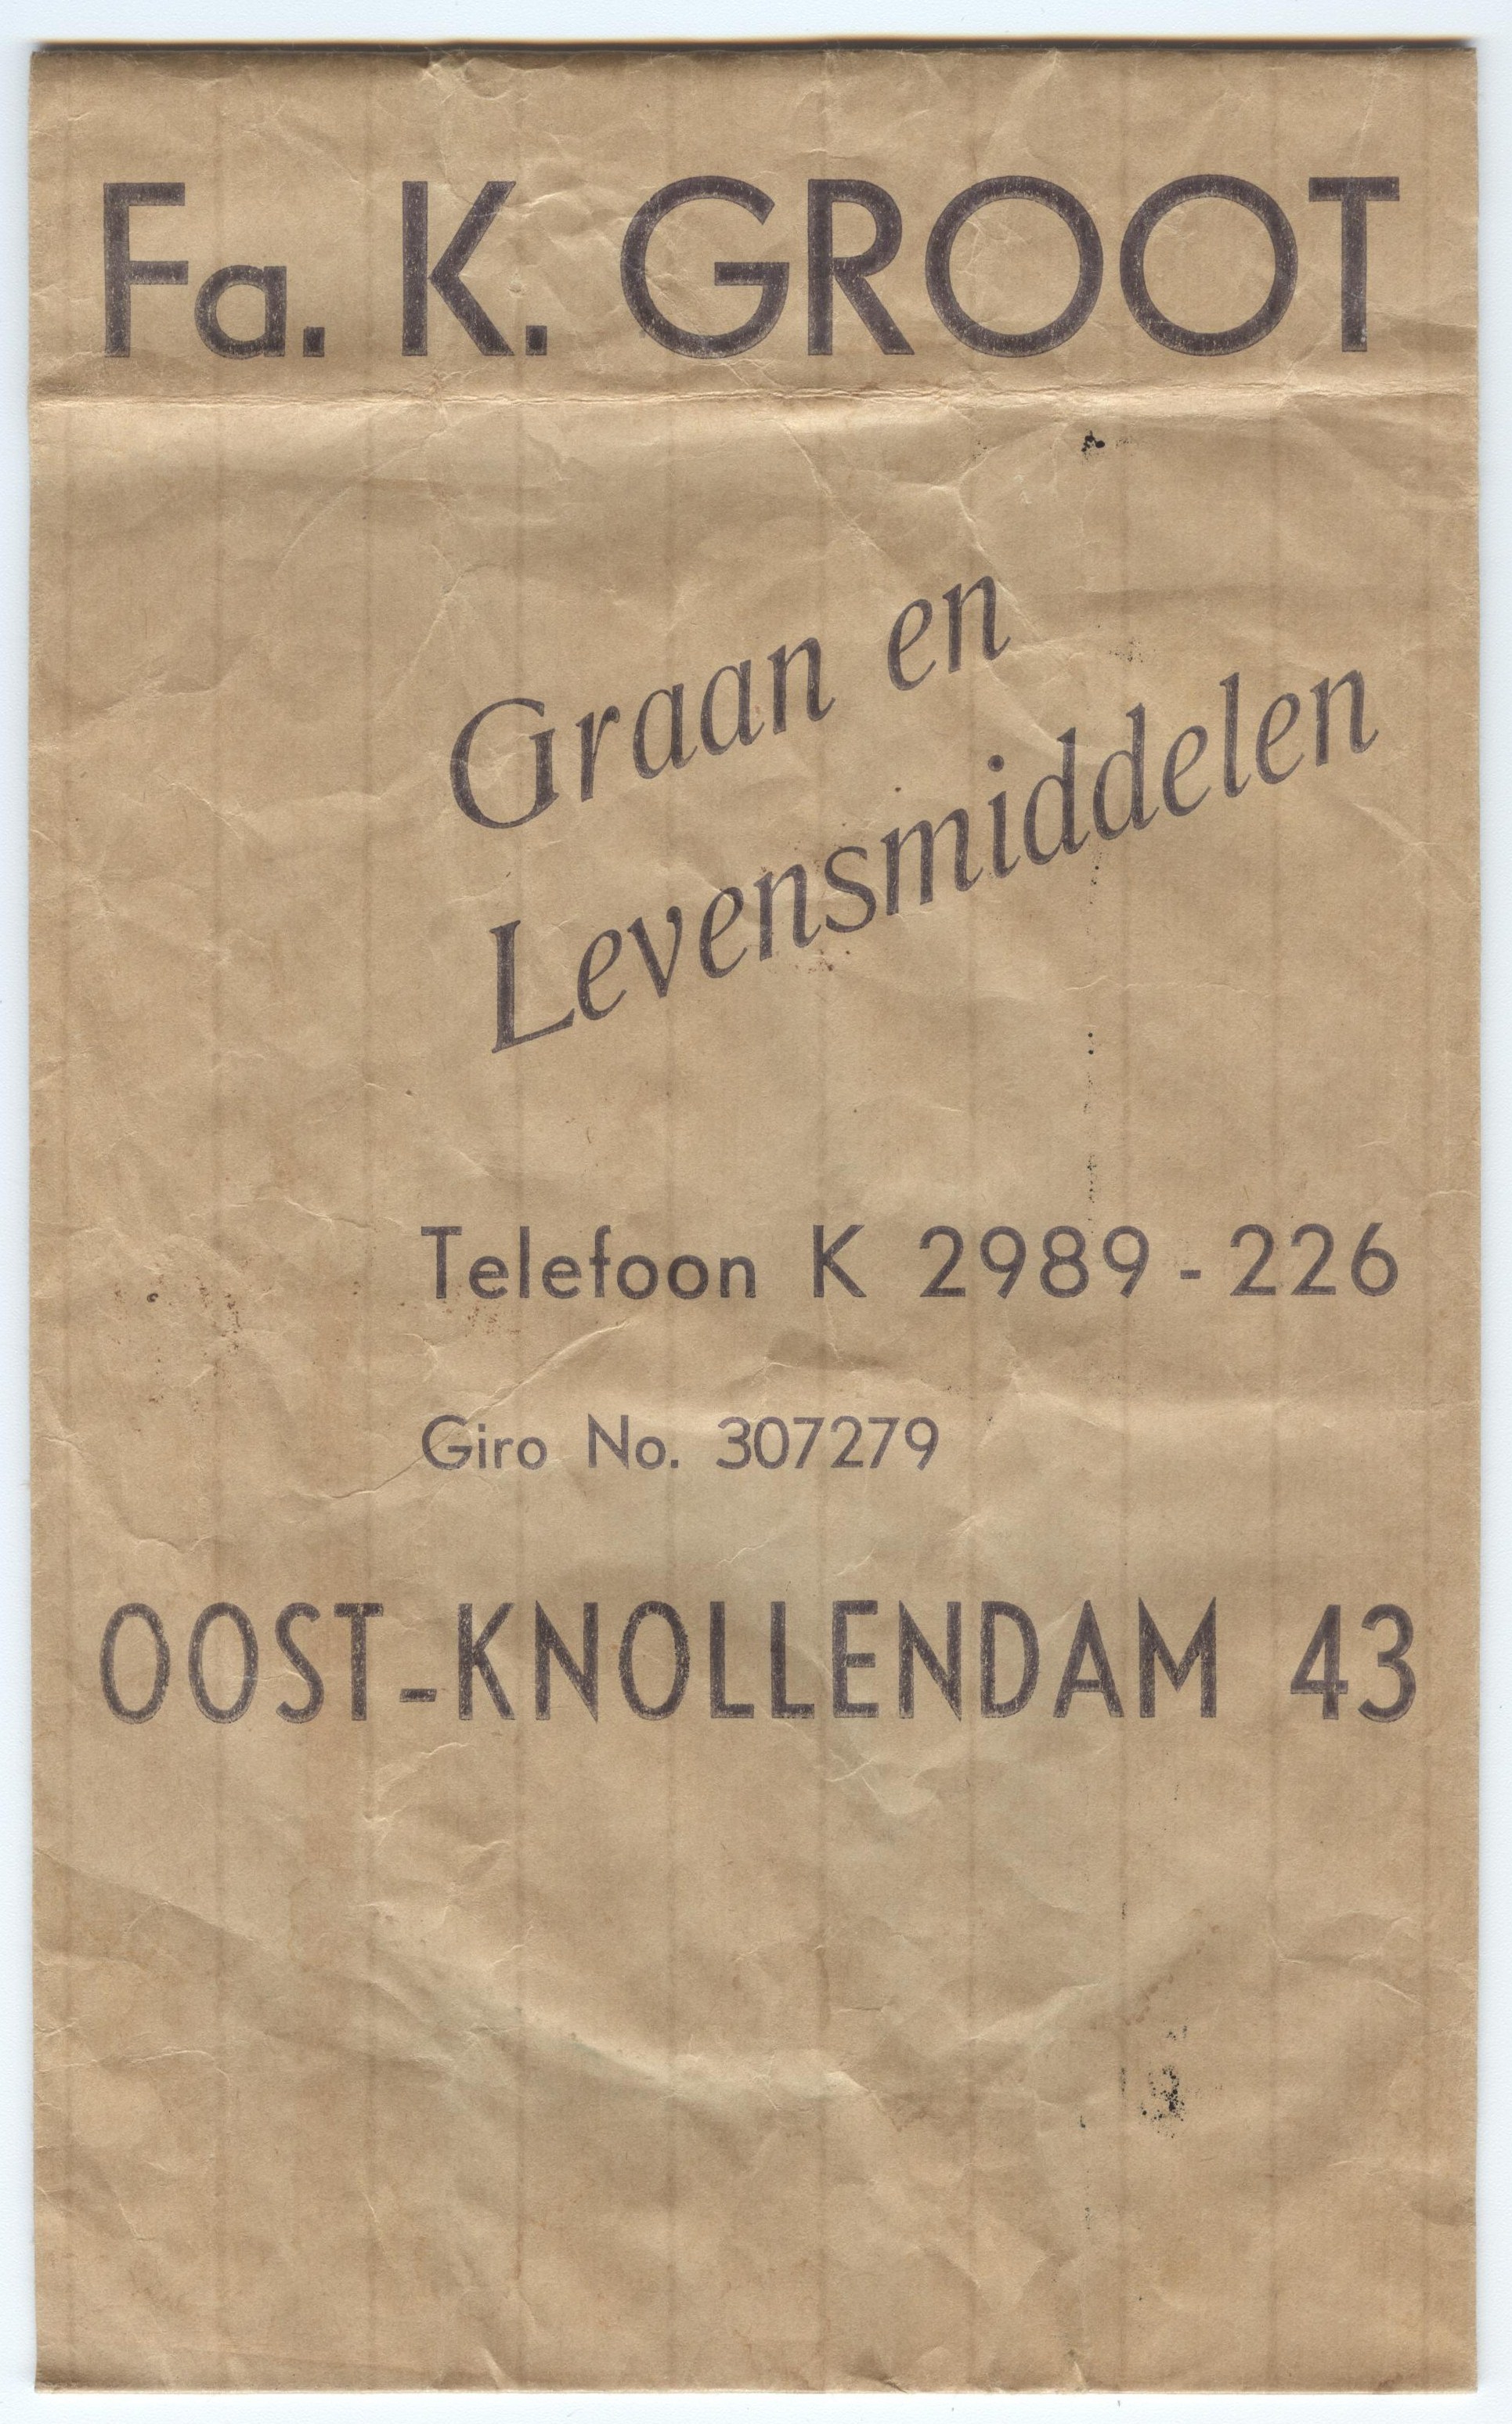 Oostknollendam Papieren zak medio 1920 (002)